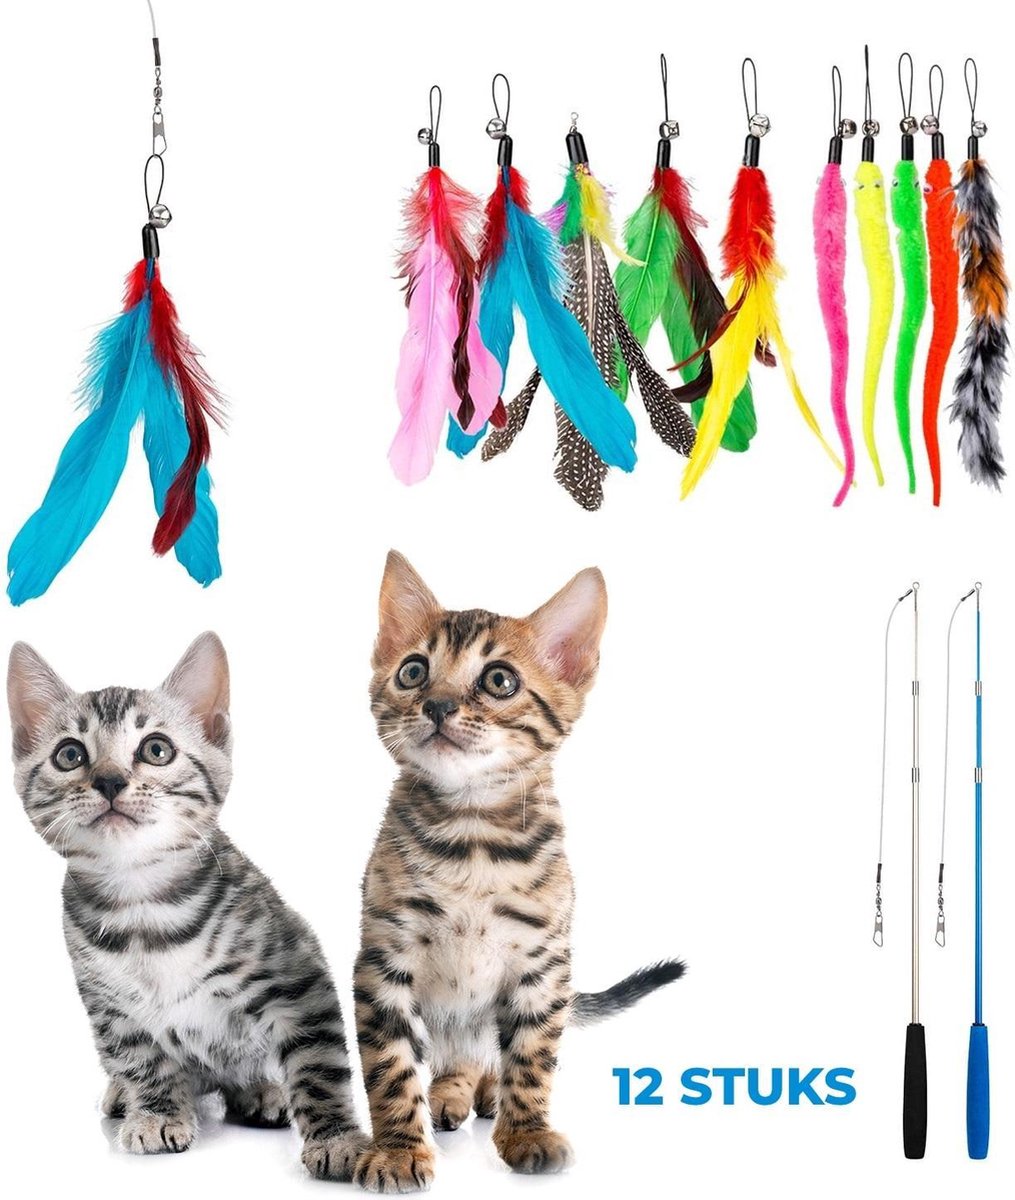 2 Kattenhengels met 10 Speeltjes – Bewegende Kattenspeeltjes met Veren en Belletjes – Interactieve Kattenspeelgoed Voor Kittens – Cat Toys - Merkloos